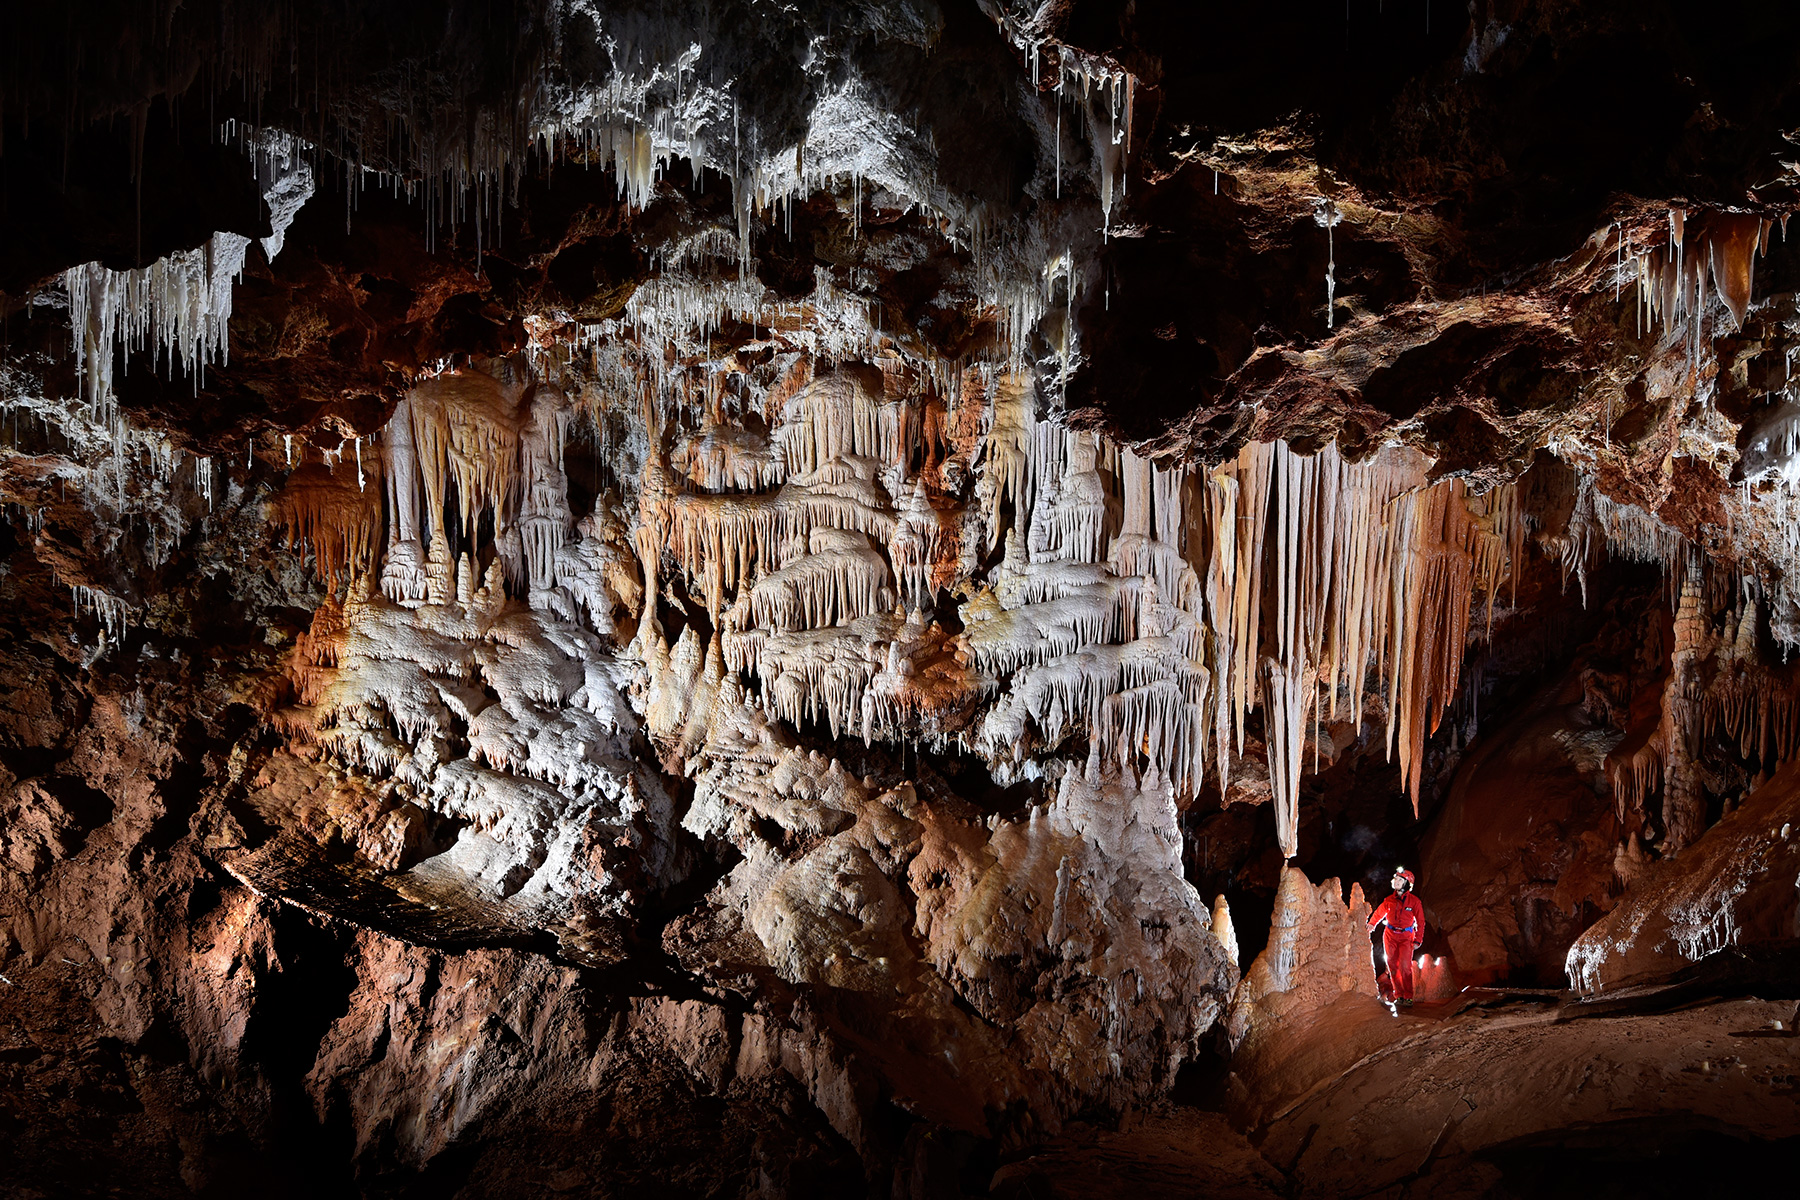 Grotte de Clamouse - Salle avec paroi couverte de coulées de calcite et de stalactites (spéléo débouchant d'une galerie)